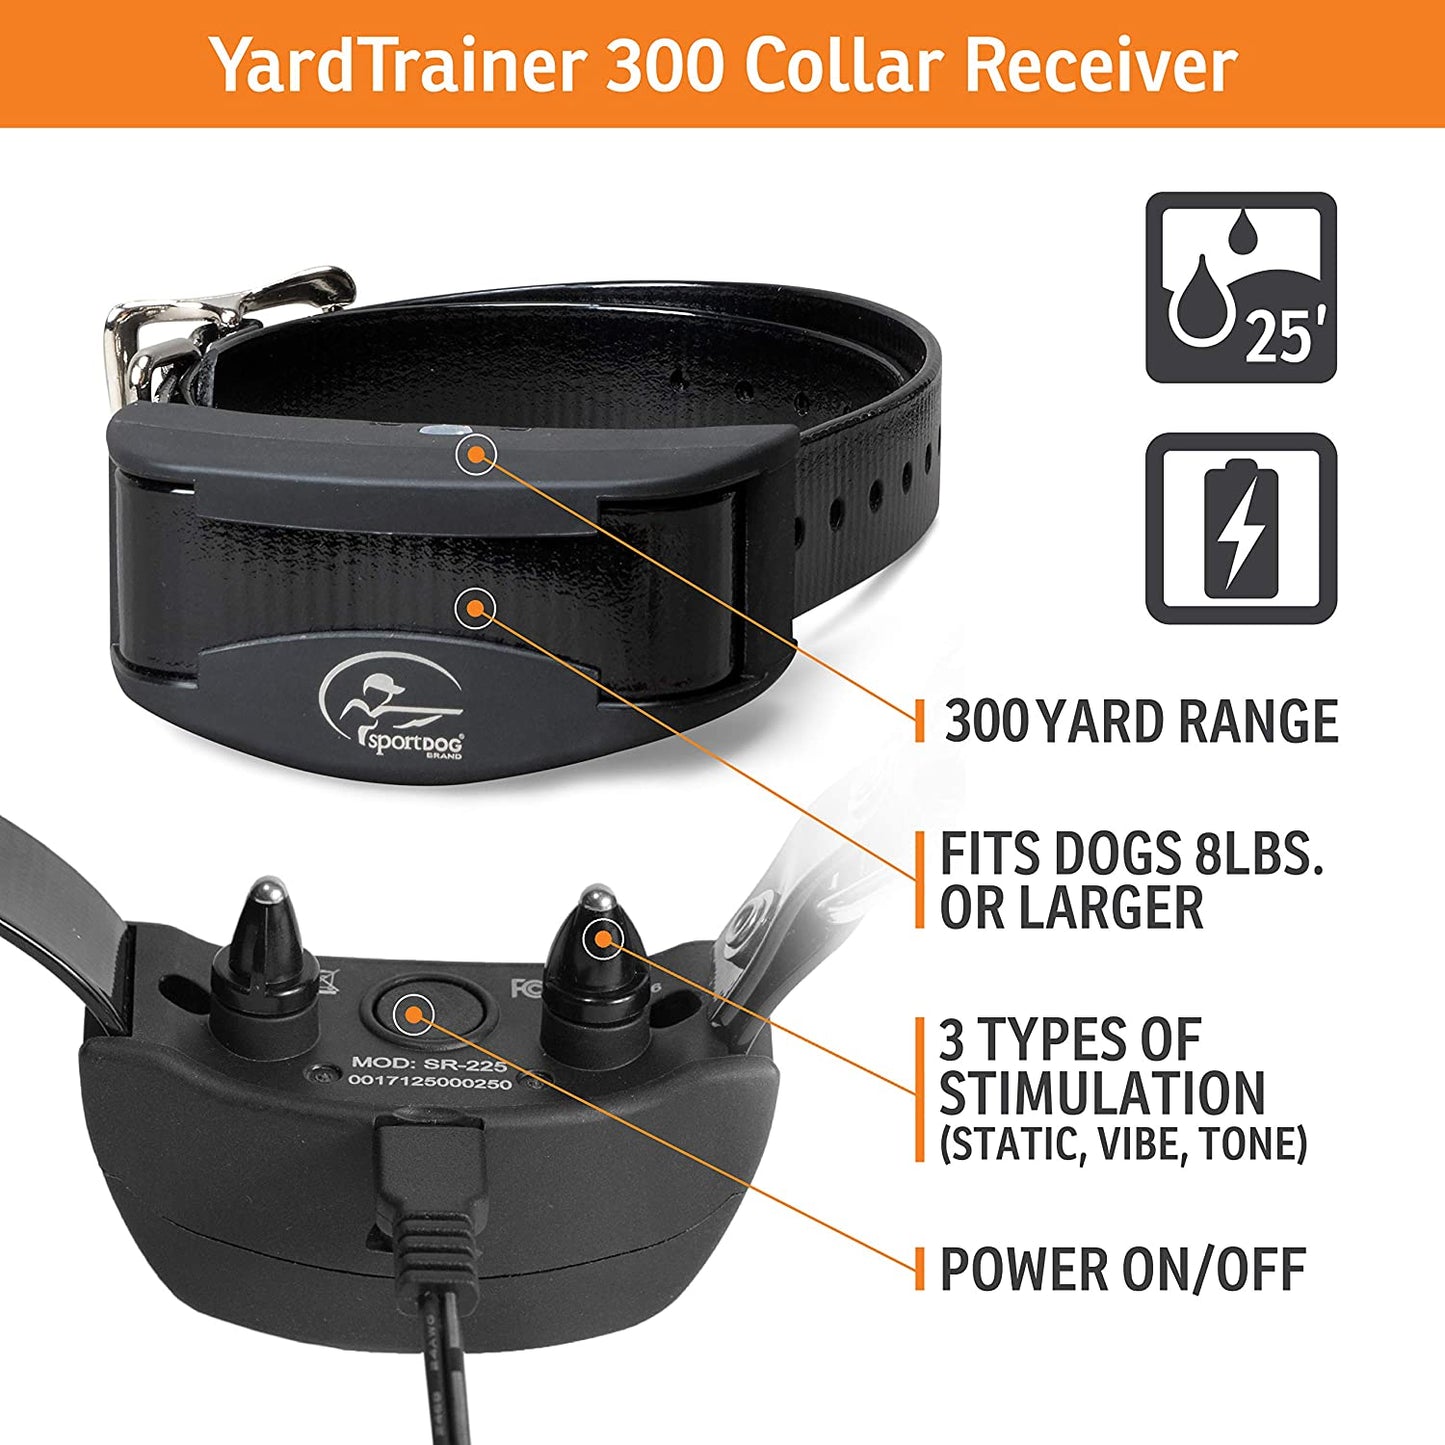 YardTrainer 300 Remote Trainer, 300 Yard Range-YT-300, Black (Pack of 1) - YT-300